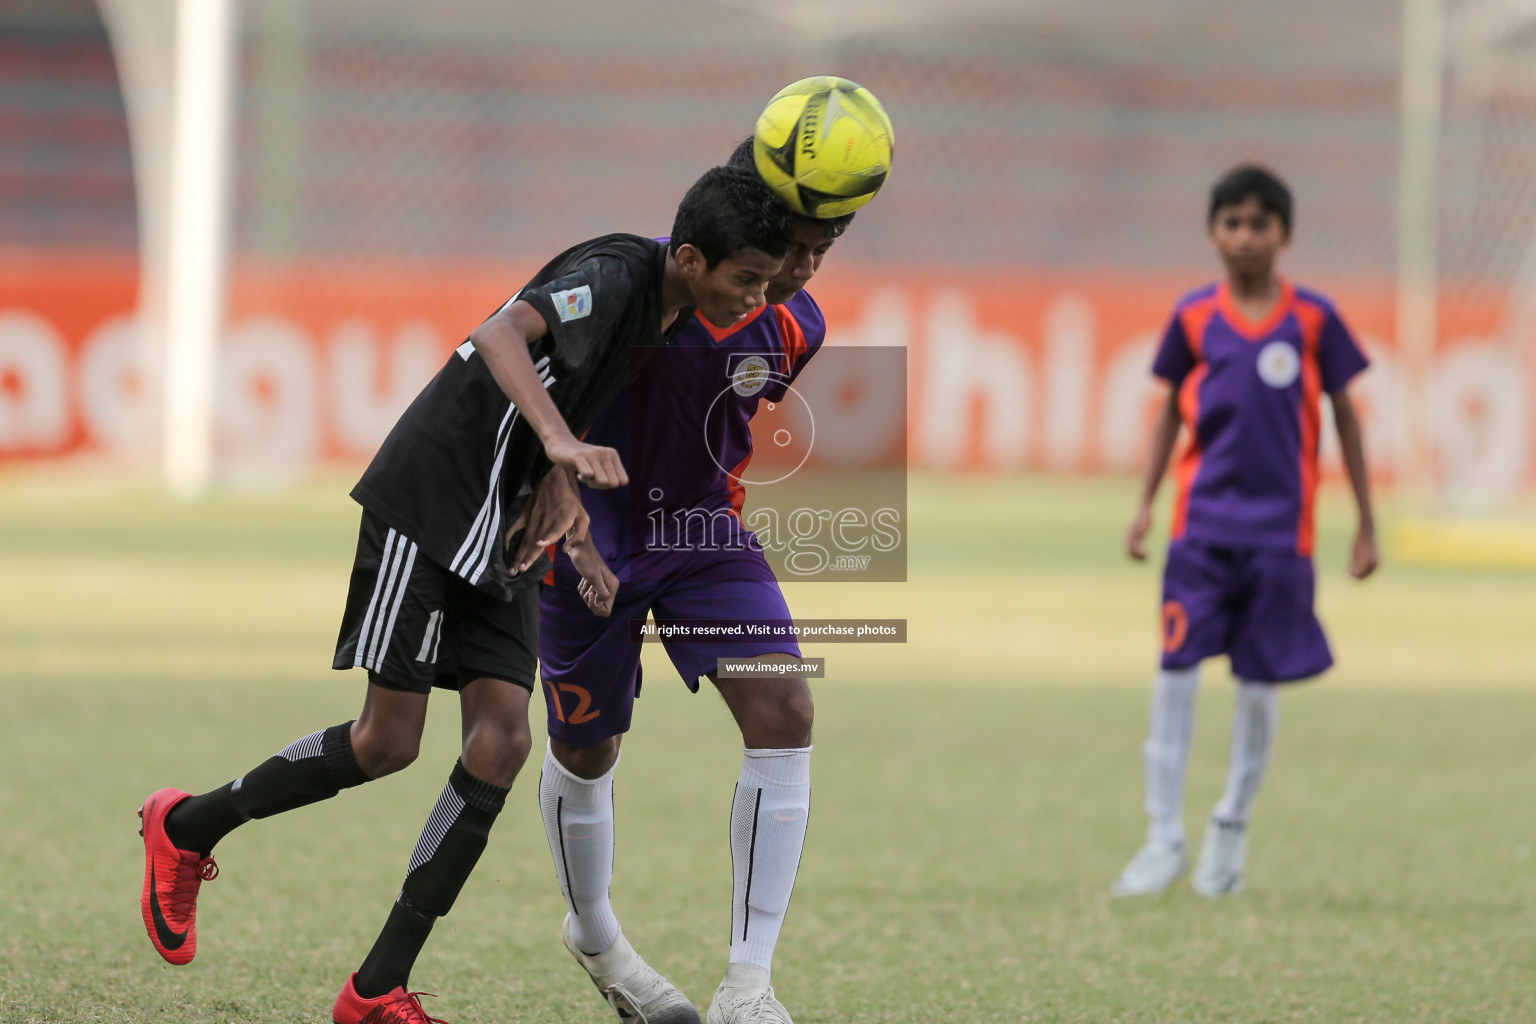 Ahmadhiyya School vs Ghiyasuddin International School in MAMEN Inter School Football Tournament 2019 (U13) in Male, Maldives on 13th April 2019 Photos: Suadh Abdul Sattar/ images.mv